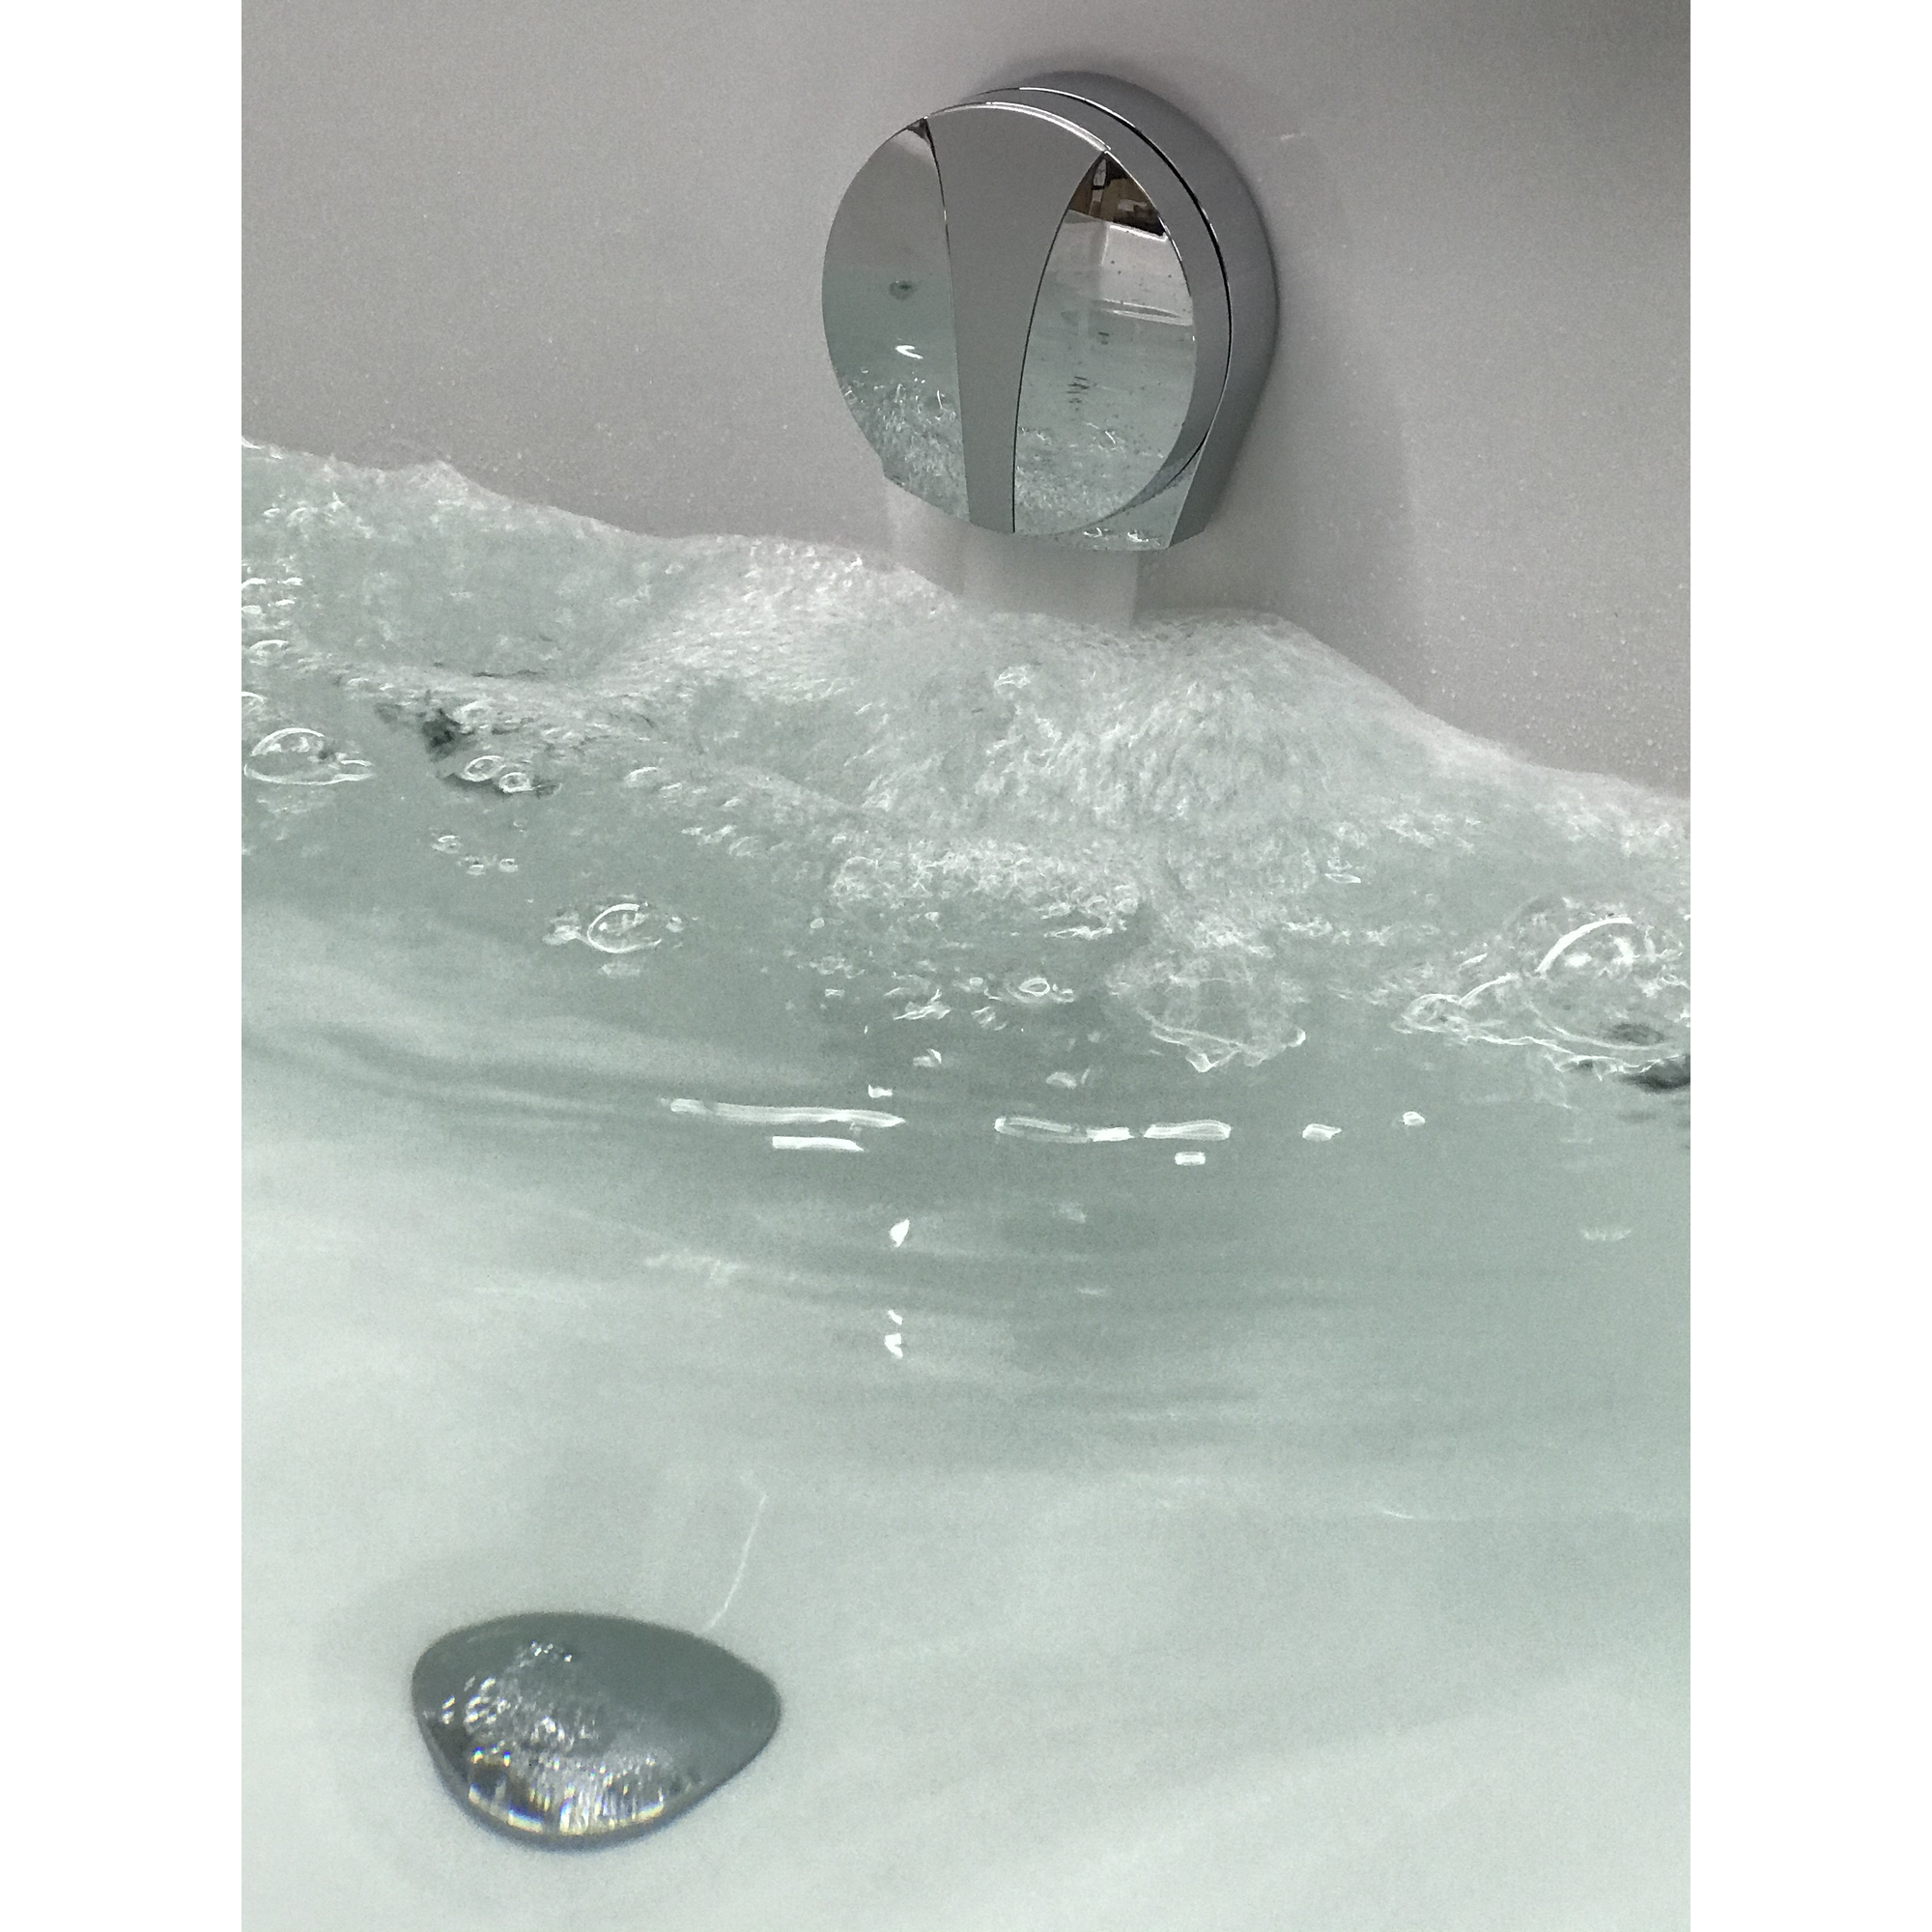 Luxus Ab- und Überlaufgarnitur verchromt Ø 40/50 mm, mit Wassereinlauffunktion + product picture